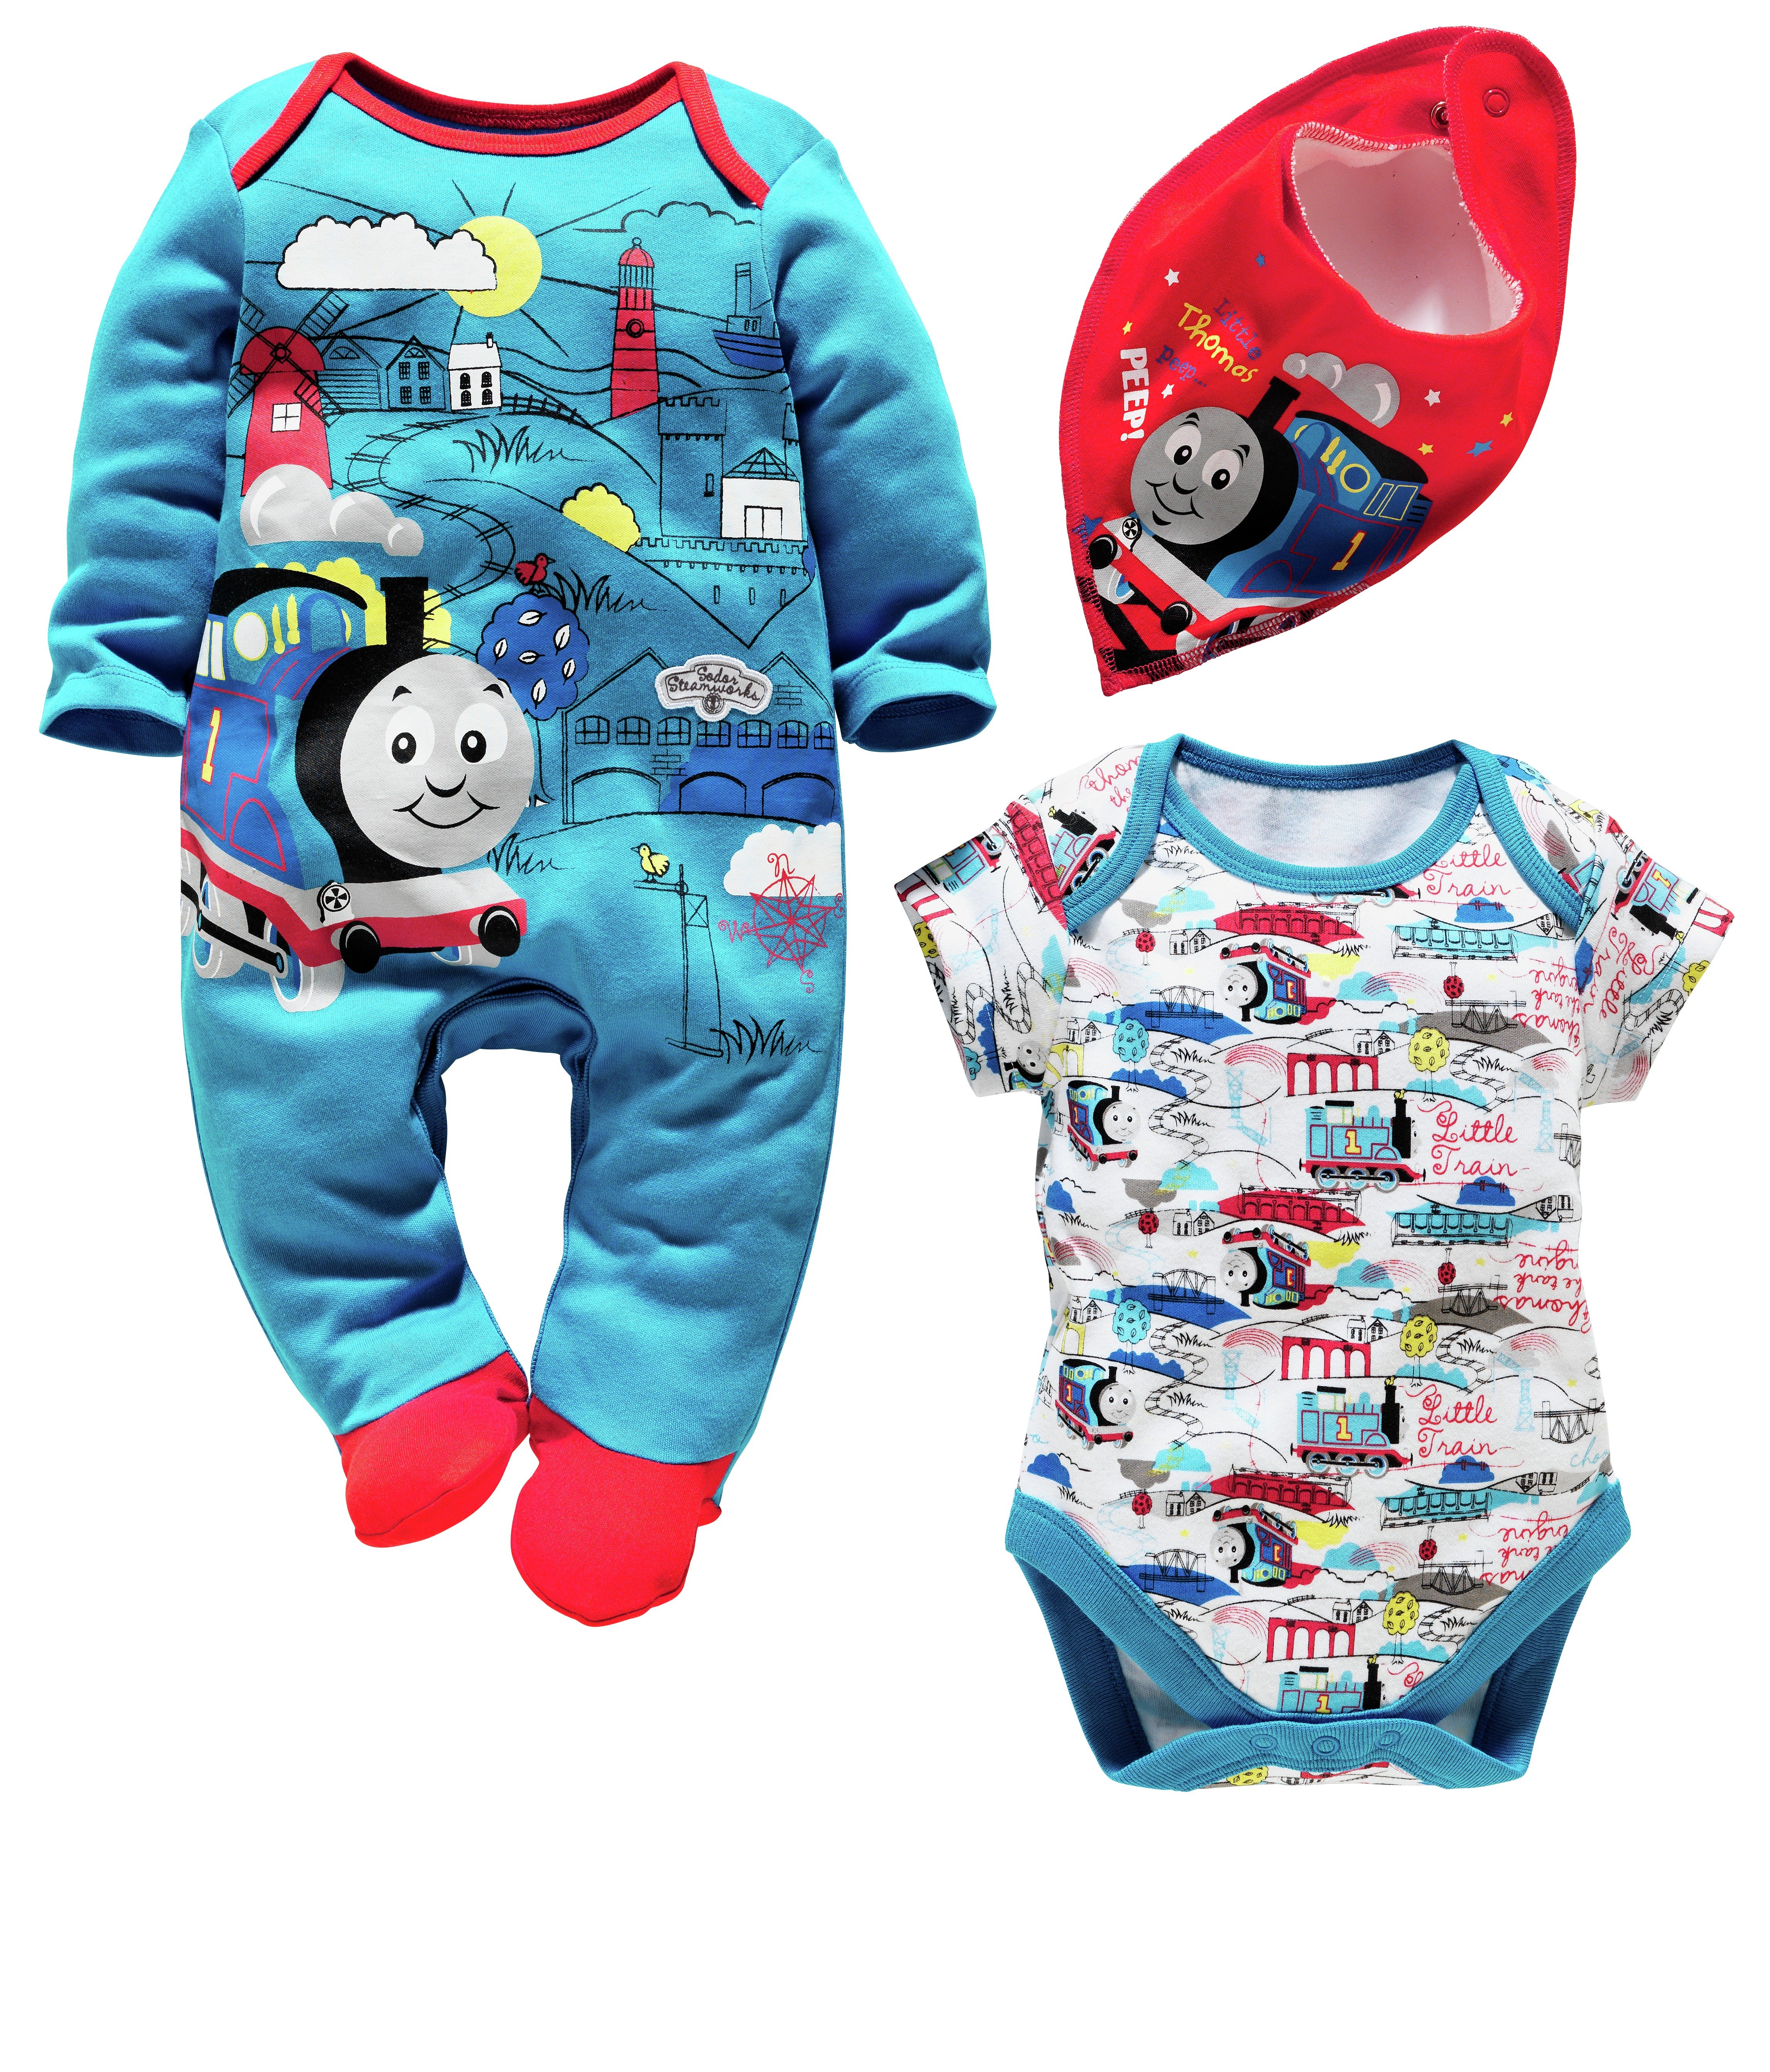 Baby Thomas Gift Set - 3-6 Months